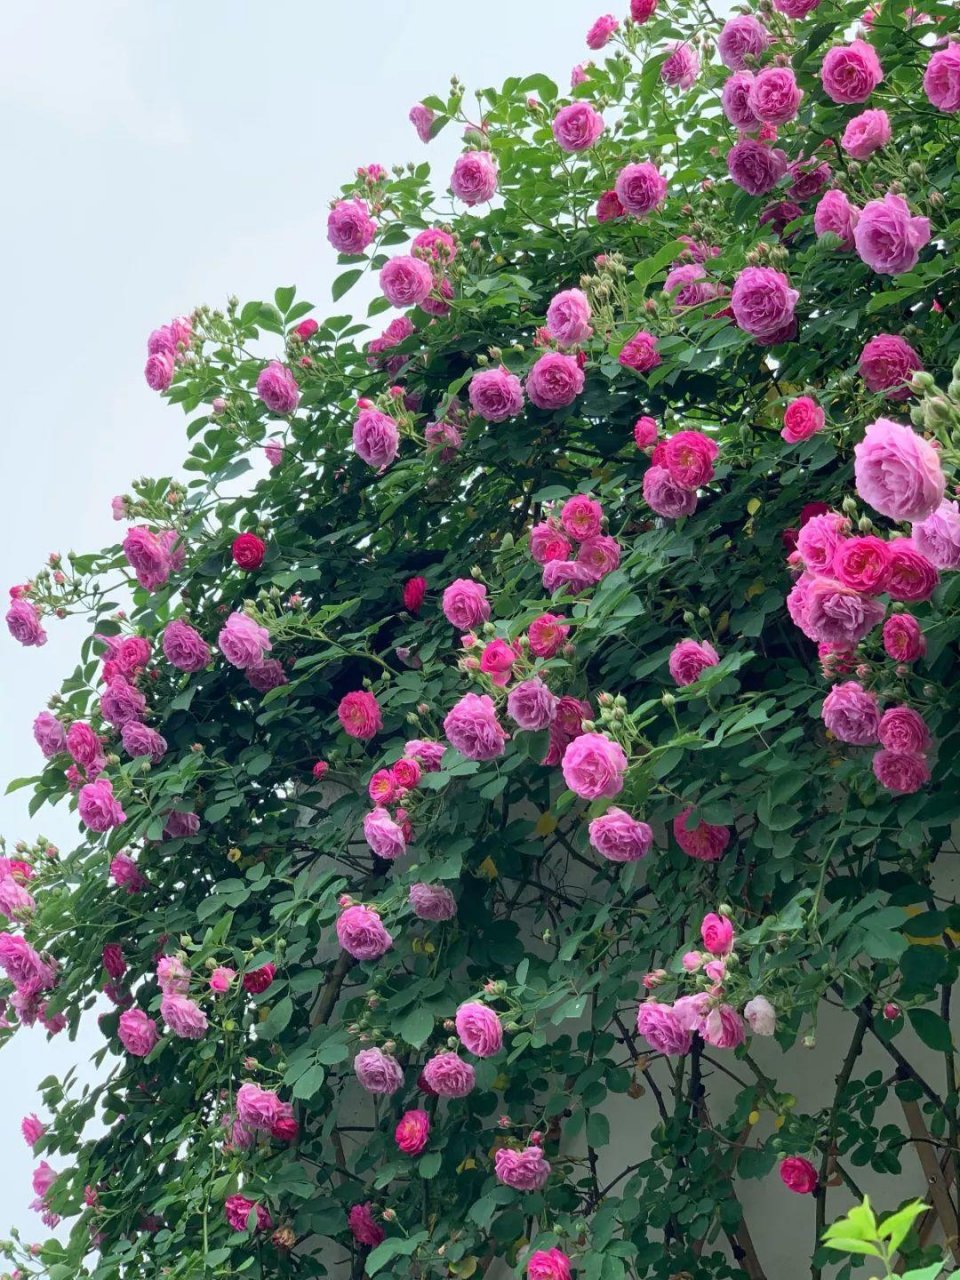 蔷薇很好养,只要种在院子里地栽,让它的枝条沿着院墙攀爬上去,几乎1